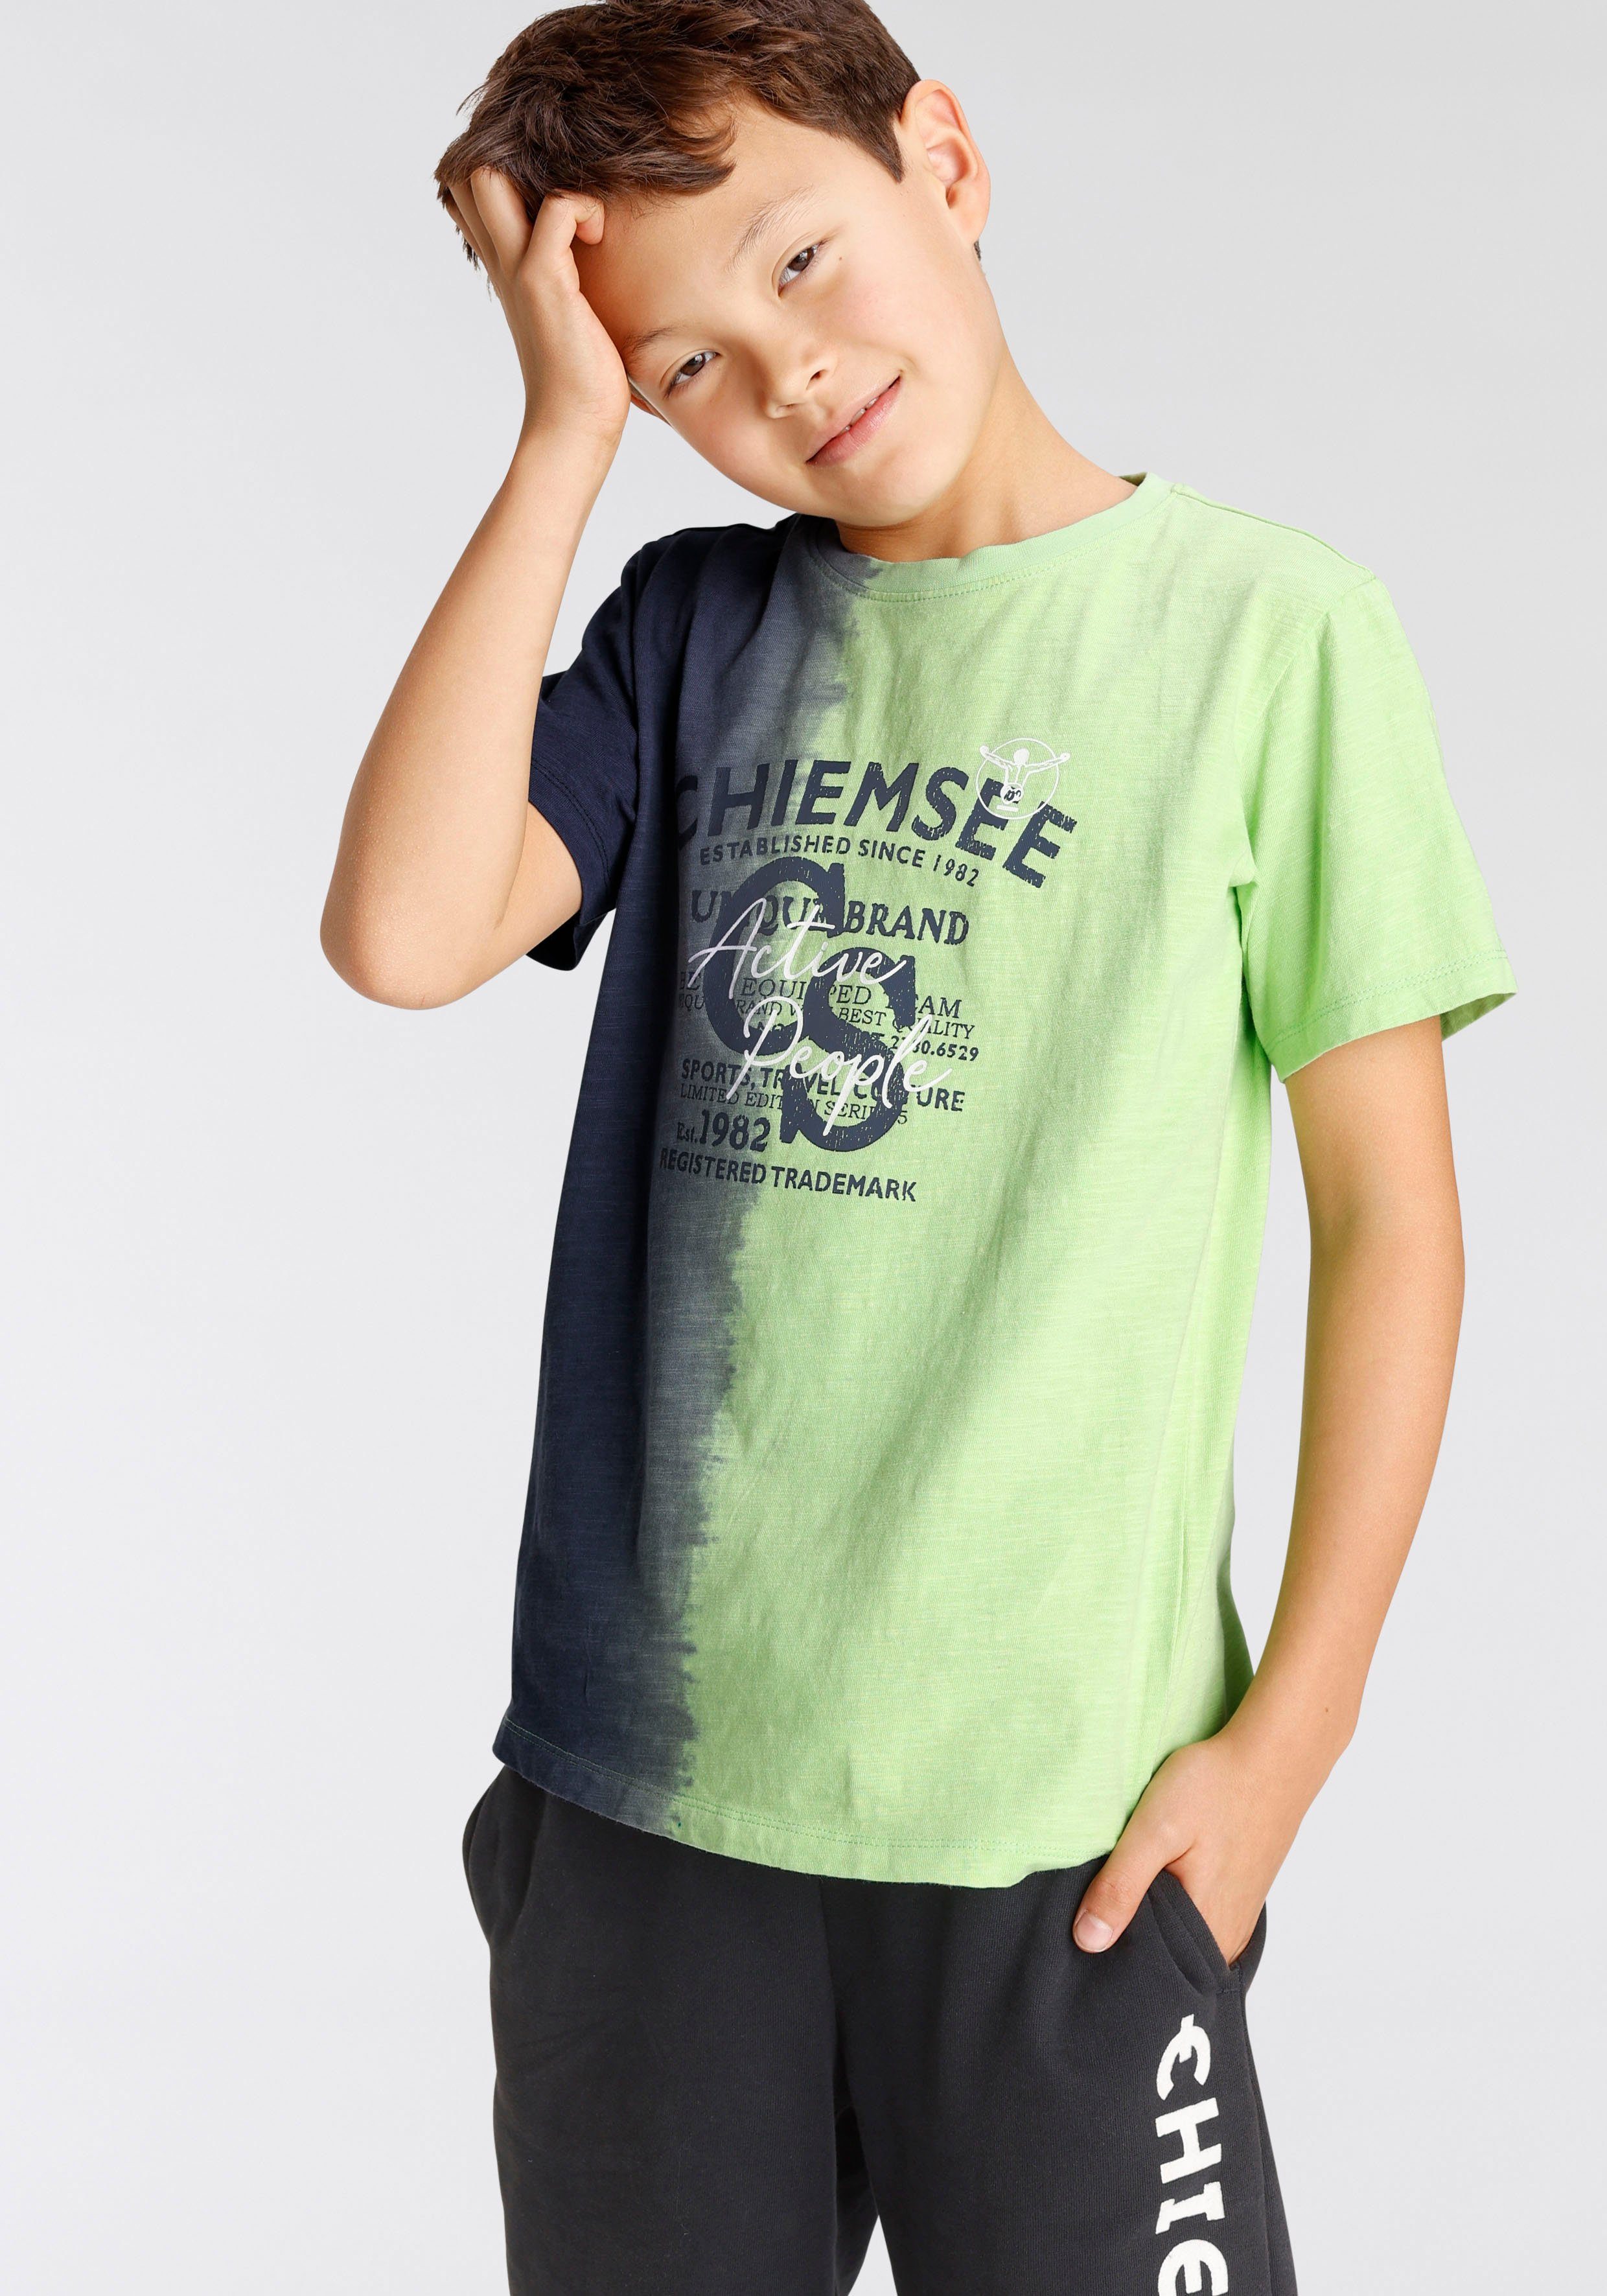 Farbverlauf T-Shirt mit Farbverlauf vertikalem Chiemsee